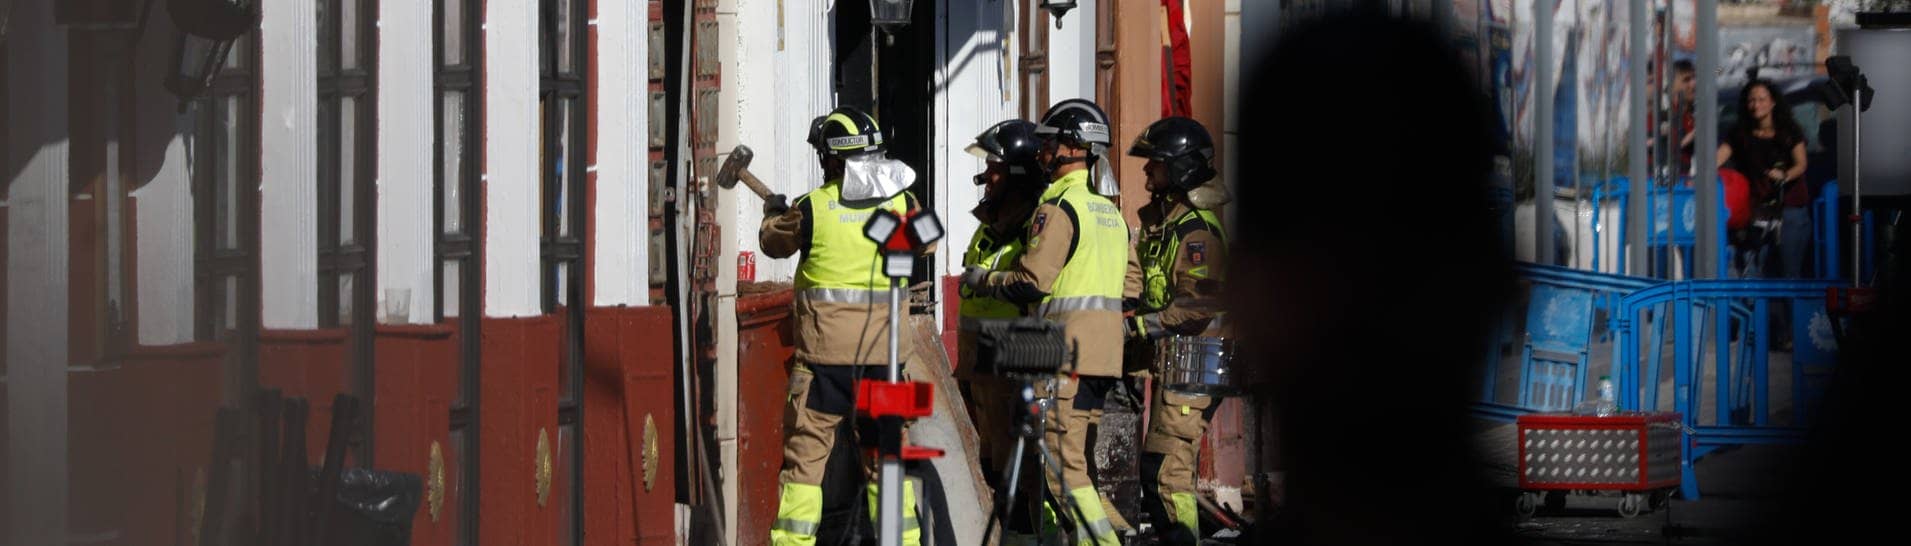 Feuerwehrleute arbeiten in einer der von einem Brand betroffenen Diskotheken in Murcia. 